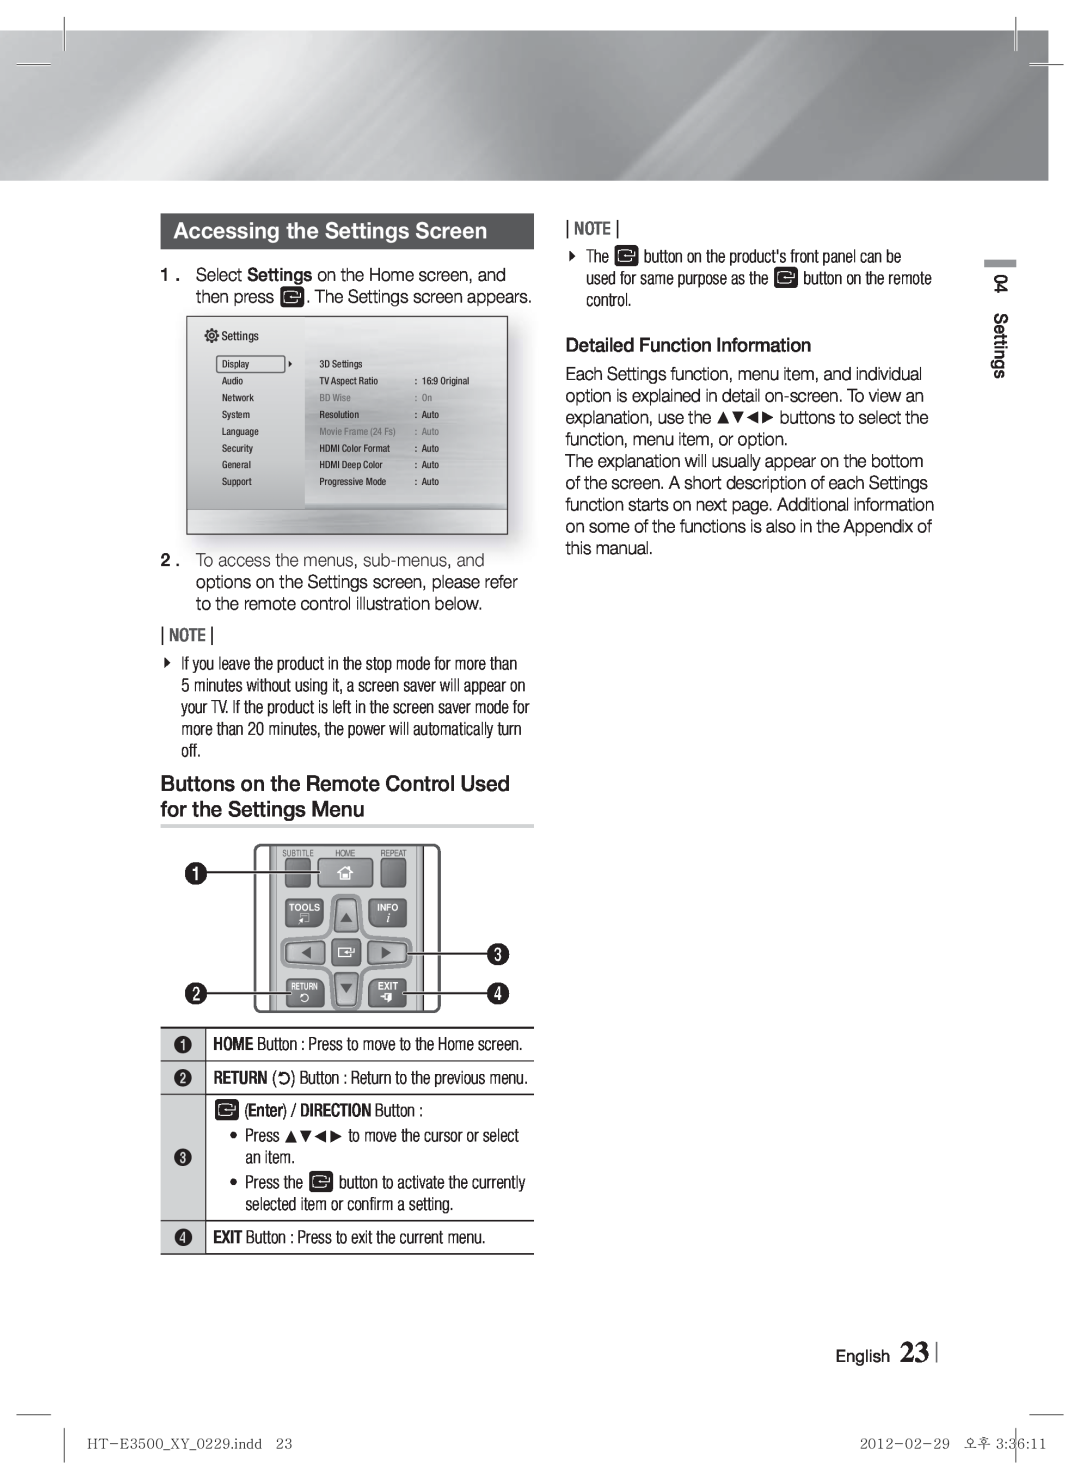 Samsung HT-E3530, E3500, HT-E3550 user manual Accessing the Settings Screen, English 